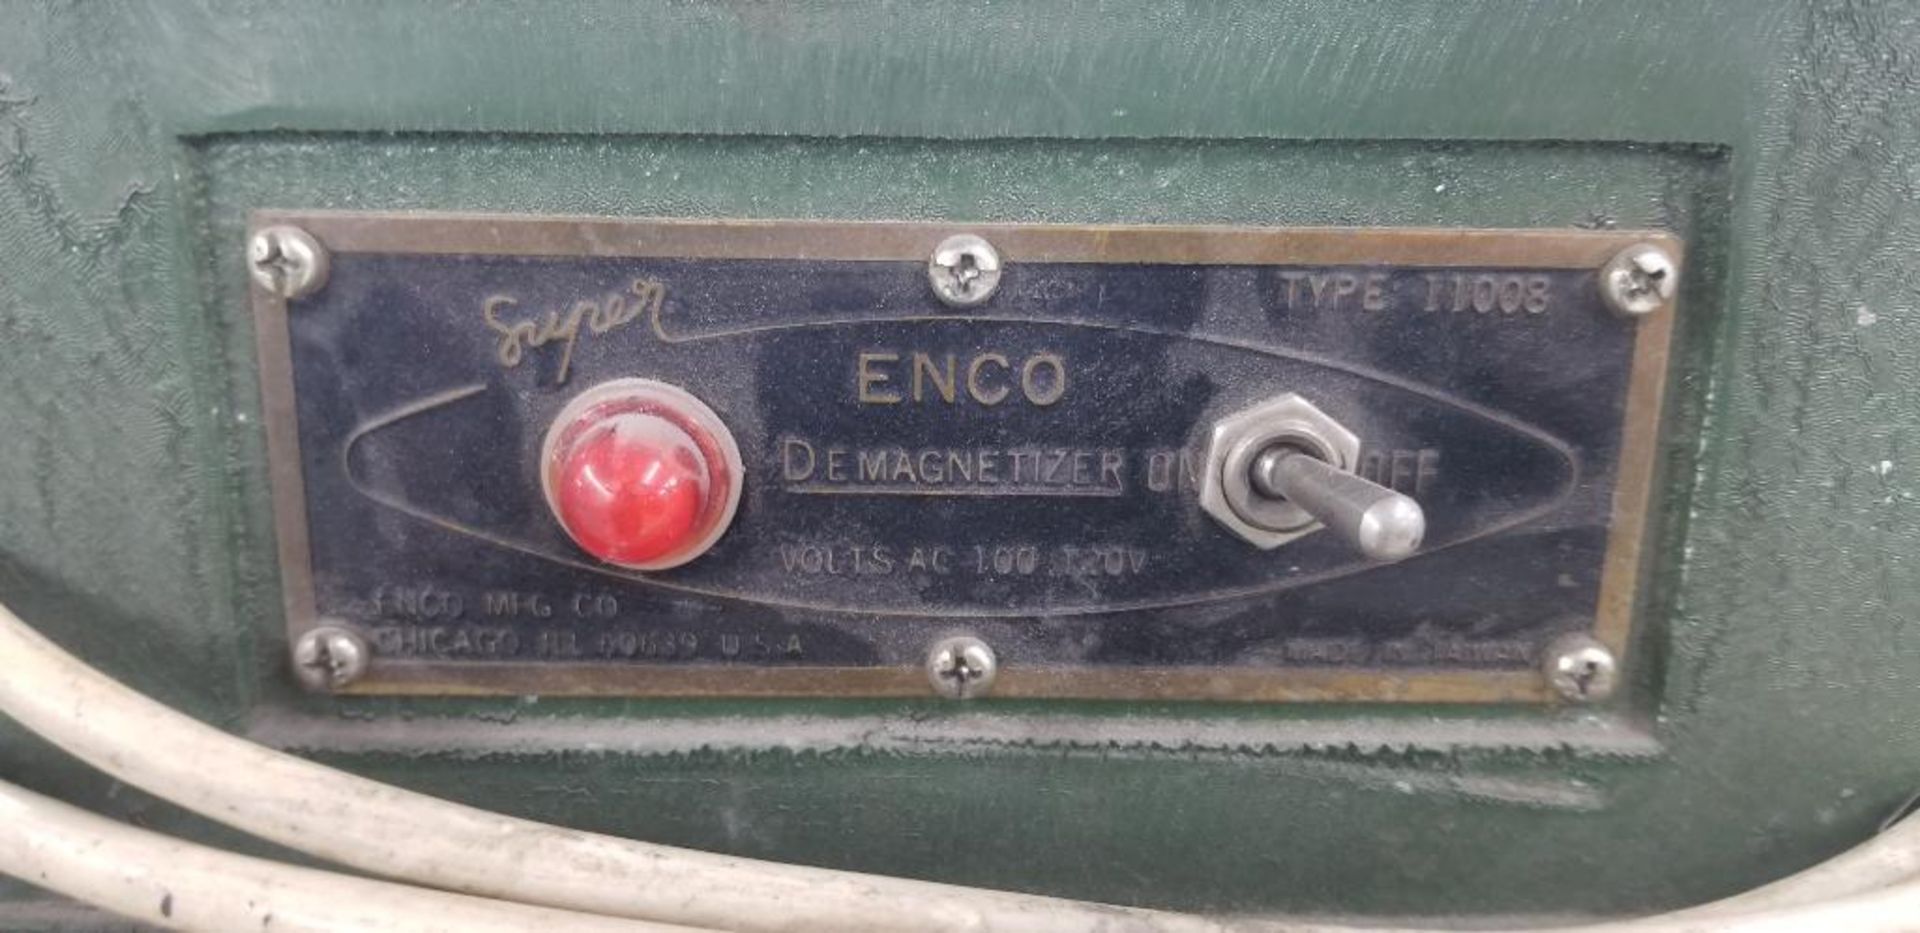 Enco Demagnetizer, Model 11008 - Image 2 of 2